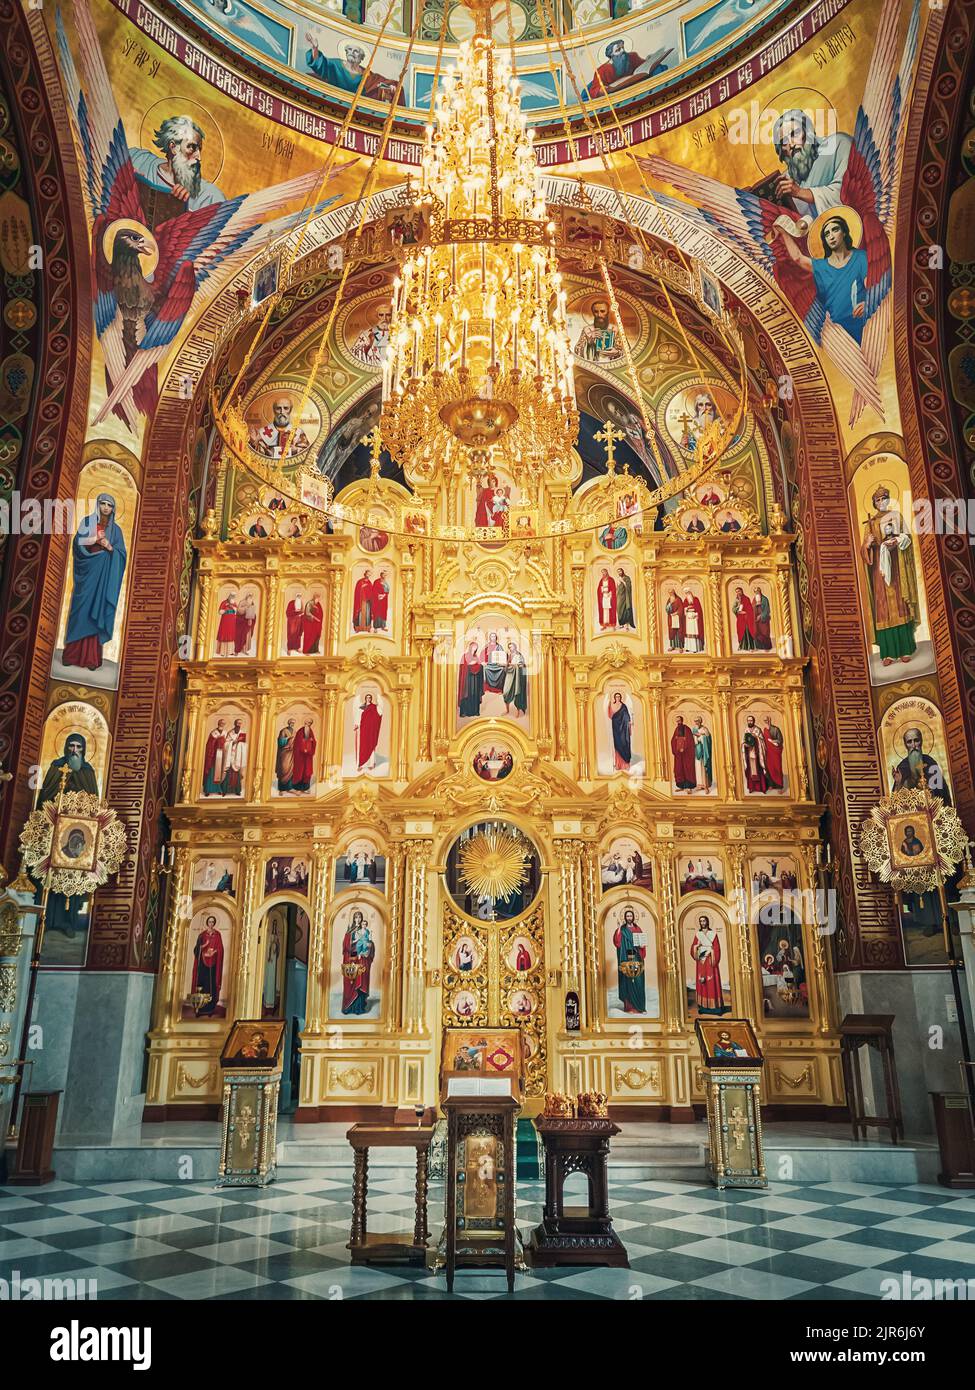 Der Altar und das schöne bemalte Innere des Klosters Curchi. Aufhängebender goldener Kronleuchter mit leuchtenden Lichtern. Verschiedene Ikonen von Heiligen als Tradi Stockfoto